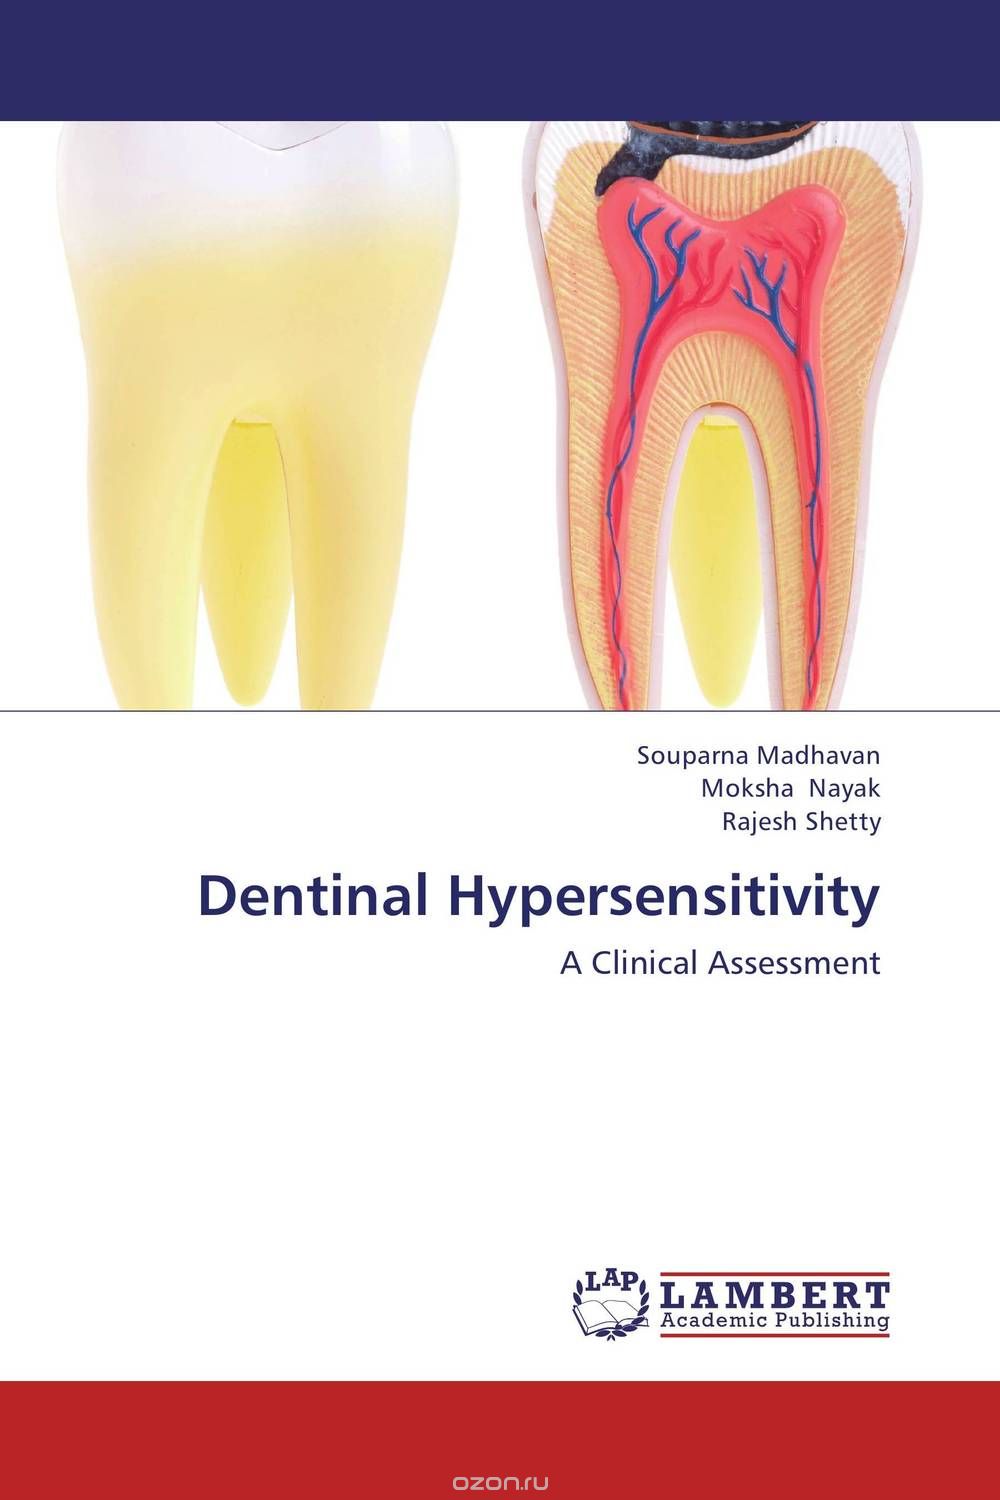 Скачать книгу "Dentinal Hypersensitivity"